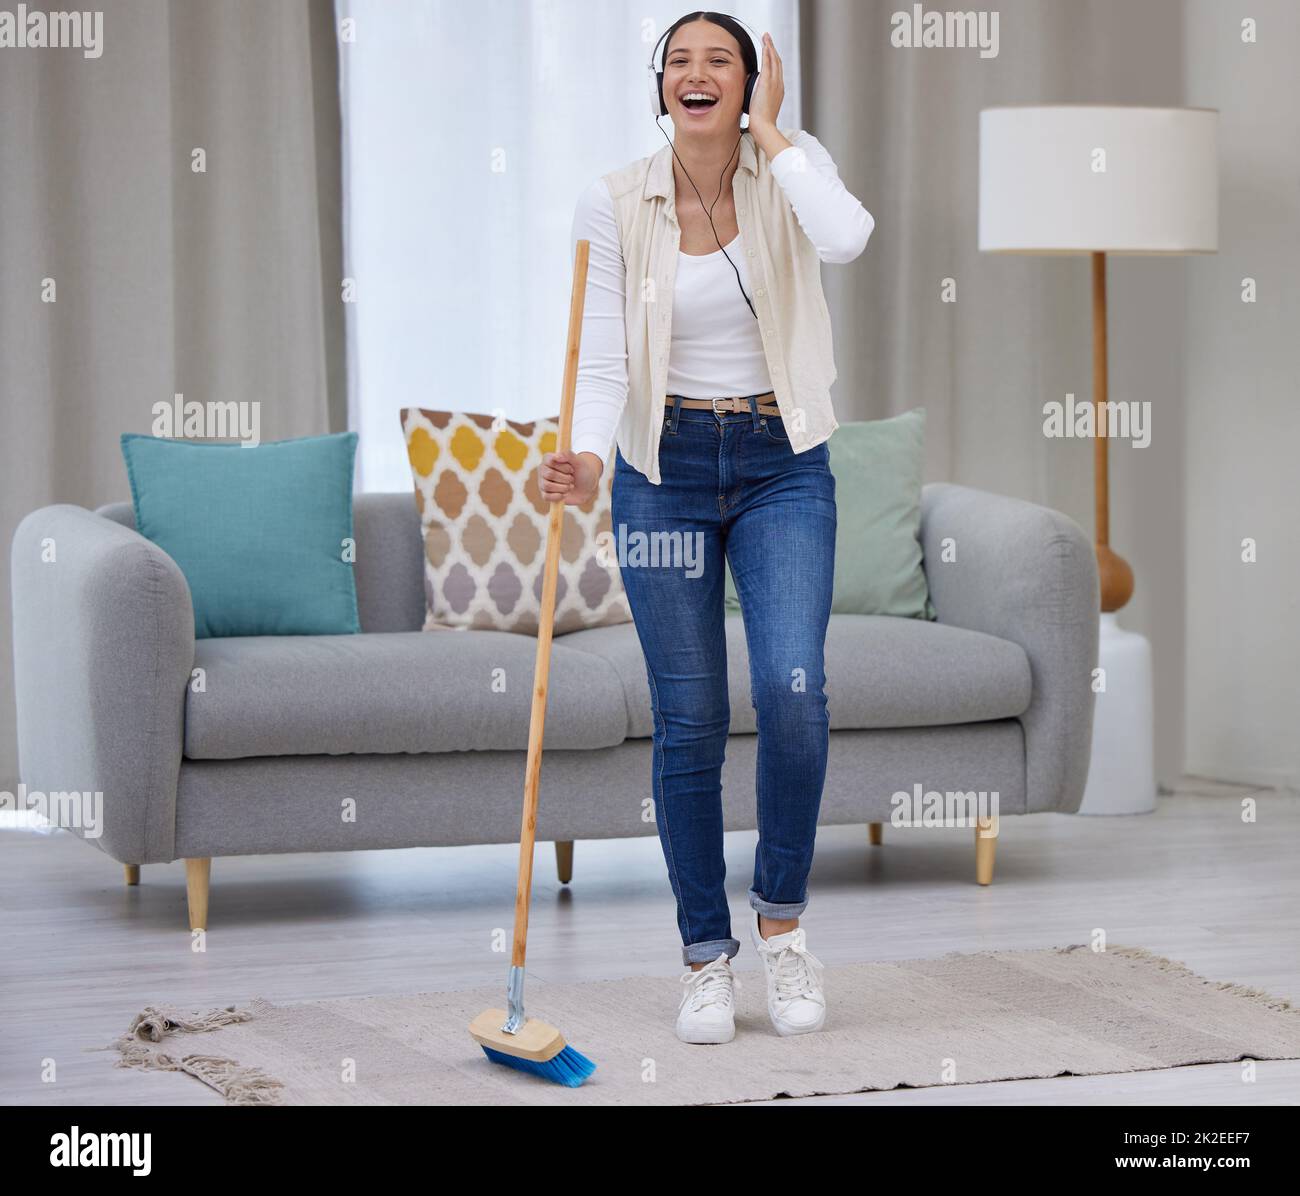 Rendi la pulizia la tua casa divertente. Scatto di una giovane donna che ascolta la musica mentre si spazzava il pavimento. Foto Stock